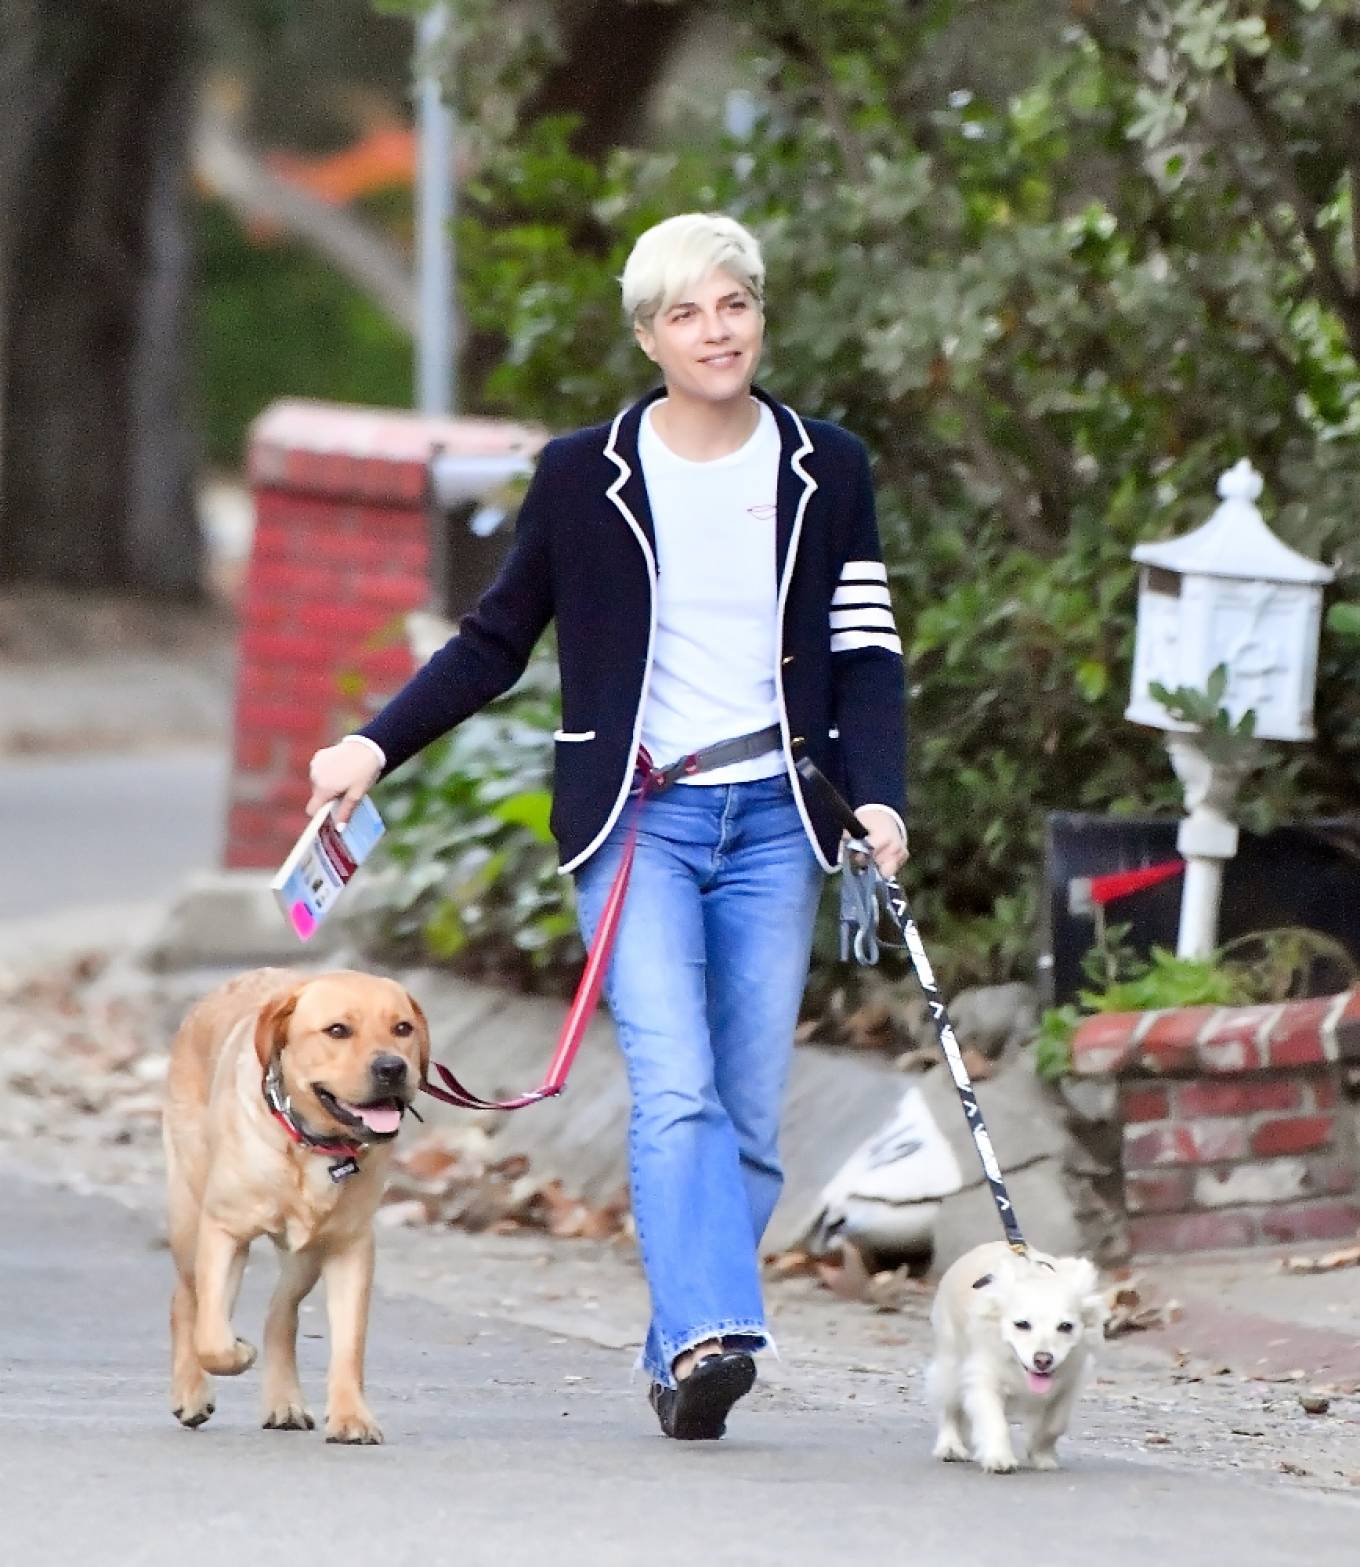 Selma Blair - Seen walking her two dogs in Los Angeles